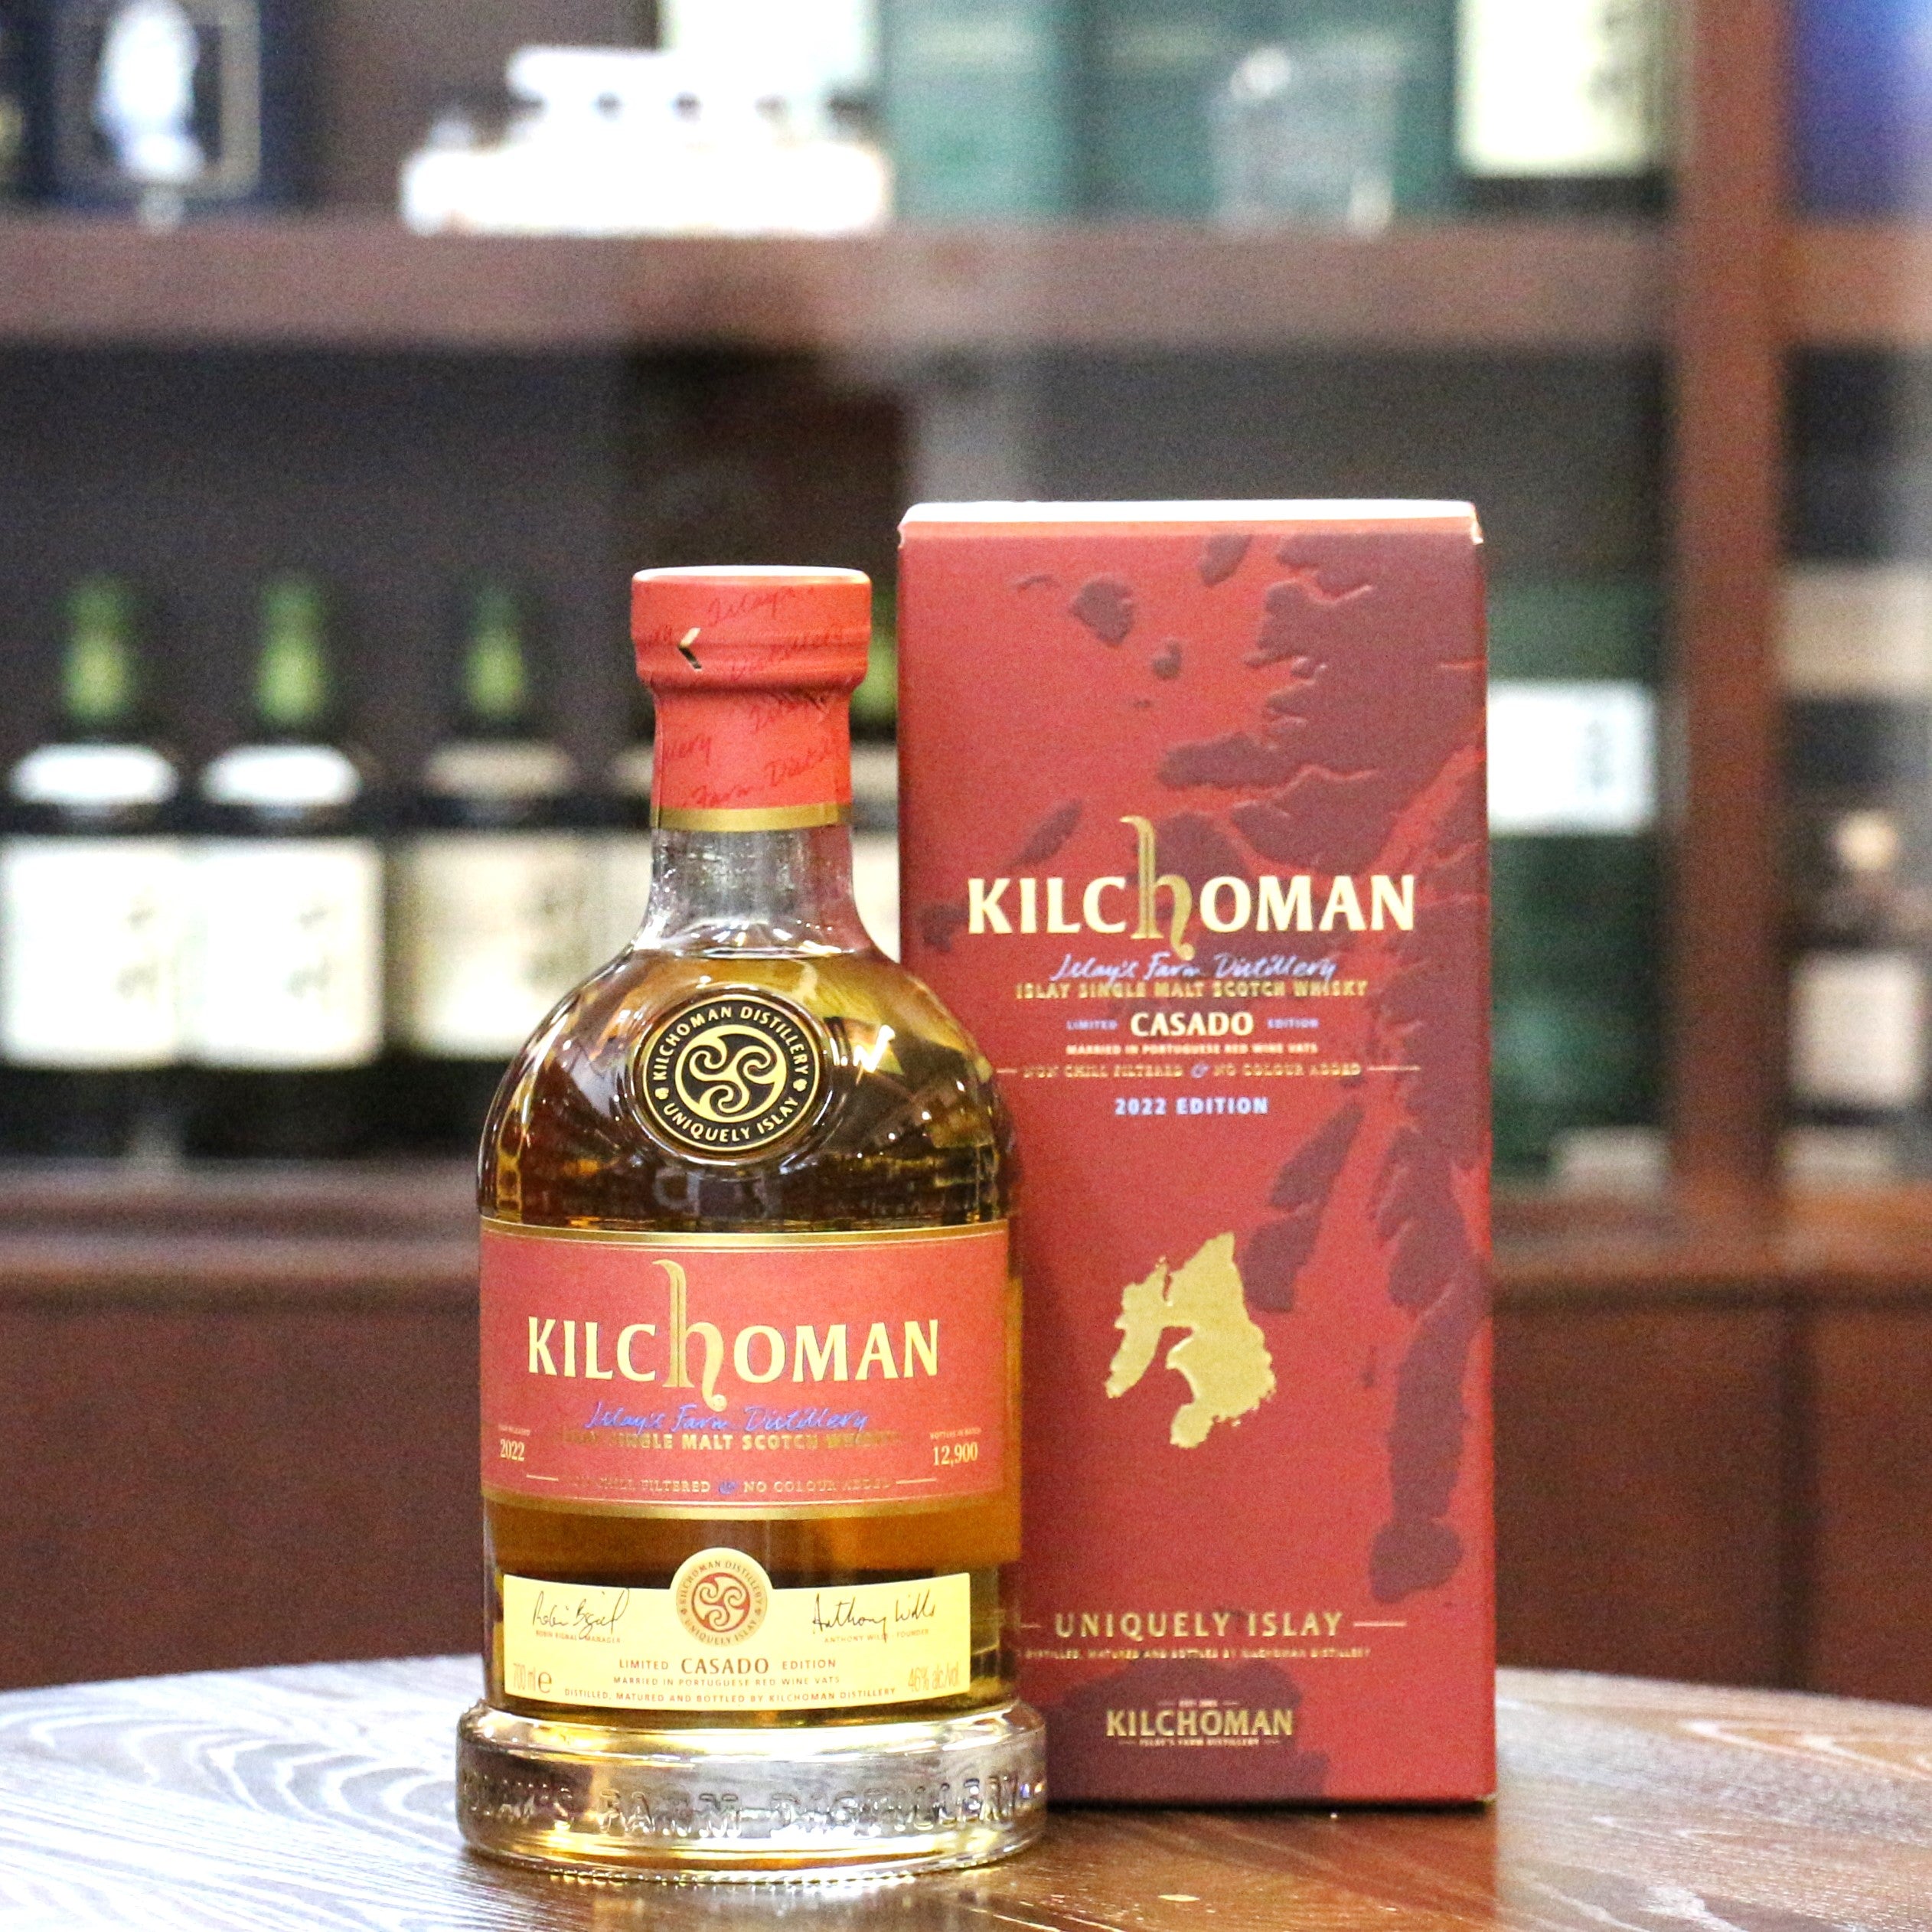 Kilchoman Casado Cask Finished 2022 Edition Islay 單一麥芽蘇格蘭威士忌